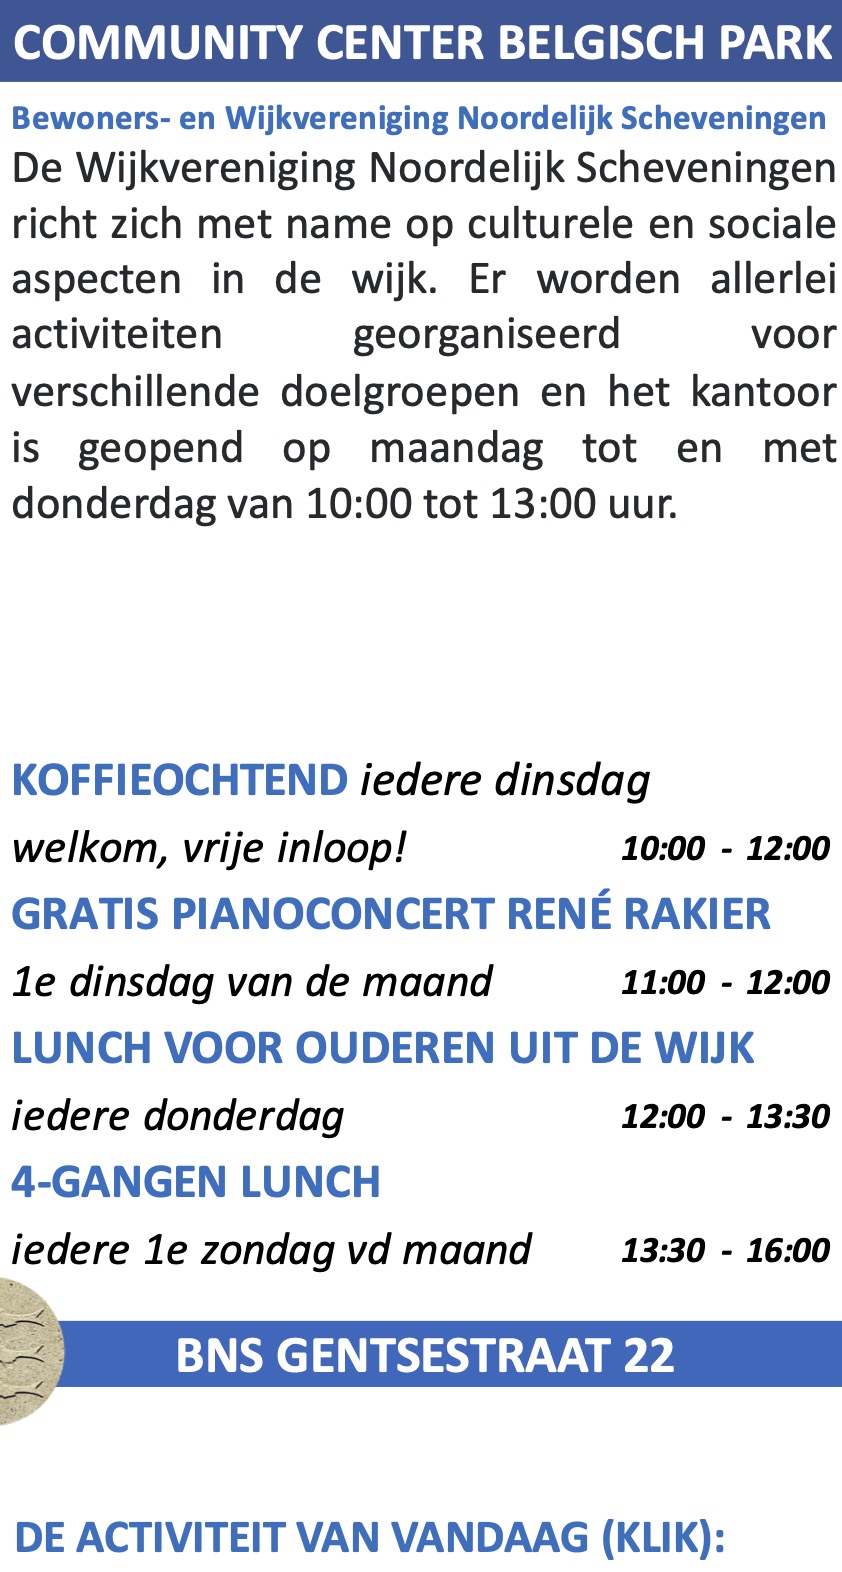 Dinsdag Lunch pianoconcert Rene Rakier @ Wijkwinkel Gentsestraat 22a tussen 12 en 13 uur. Entree gratis.